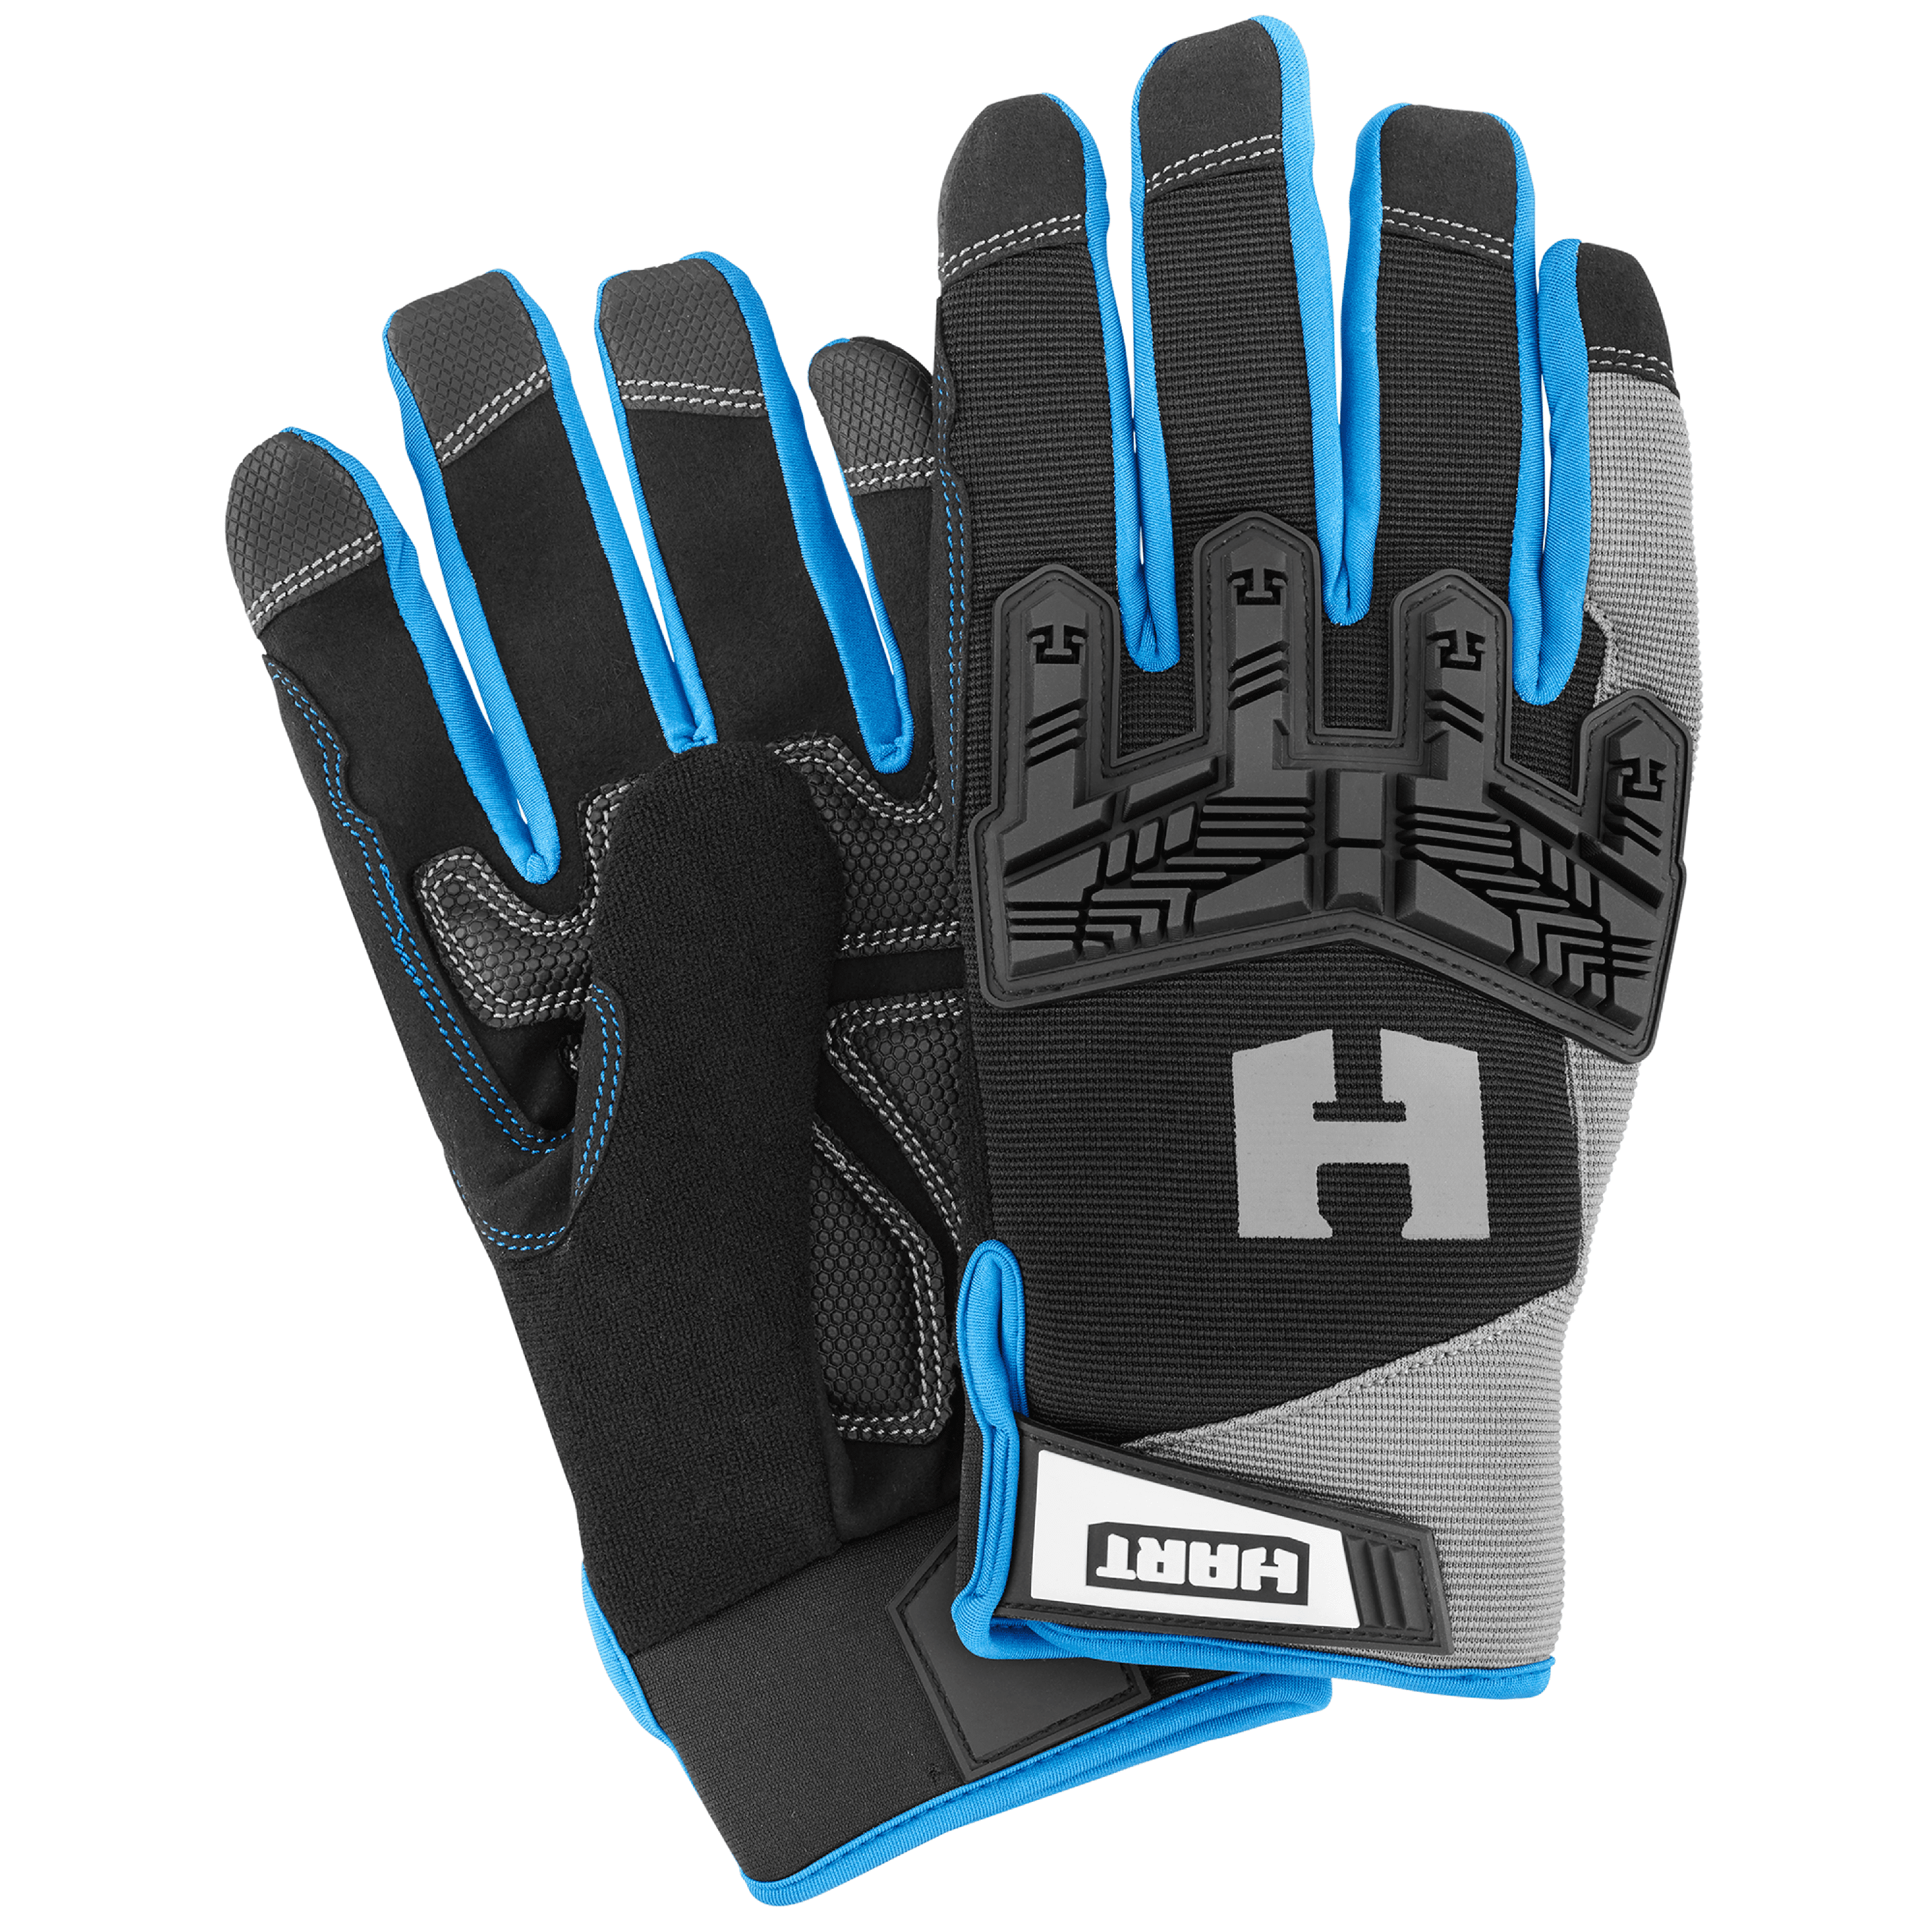 HART Impact Work Gloves, 5-Finger Touchscreen Capable, Size Medium